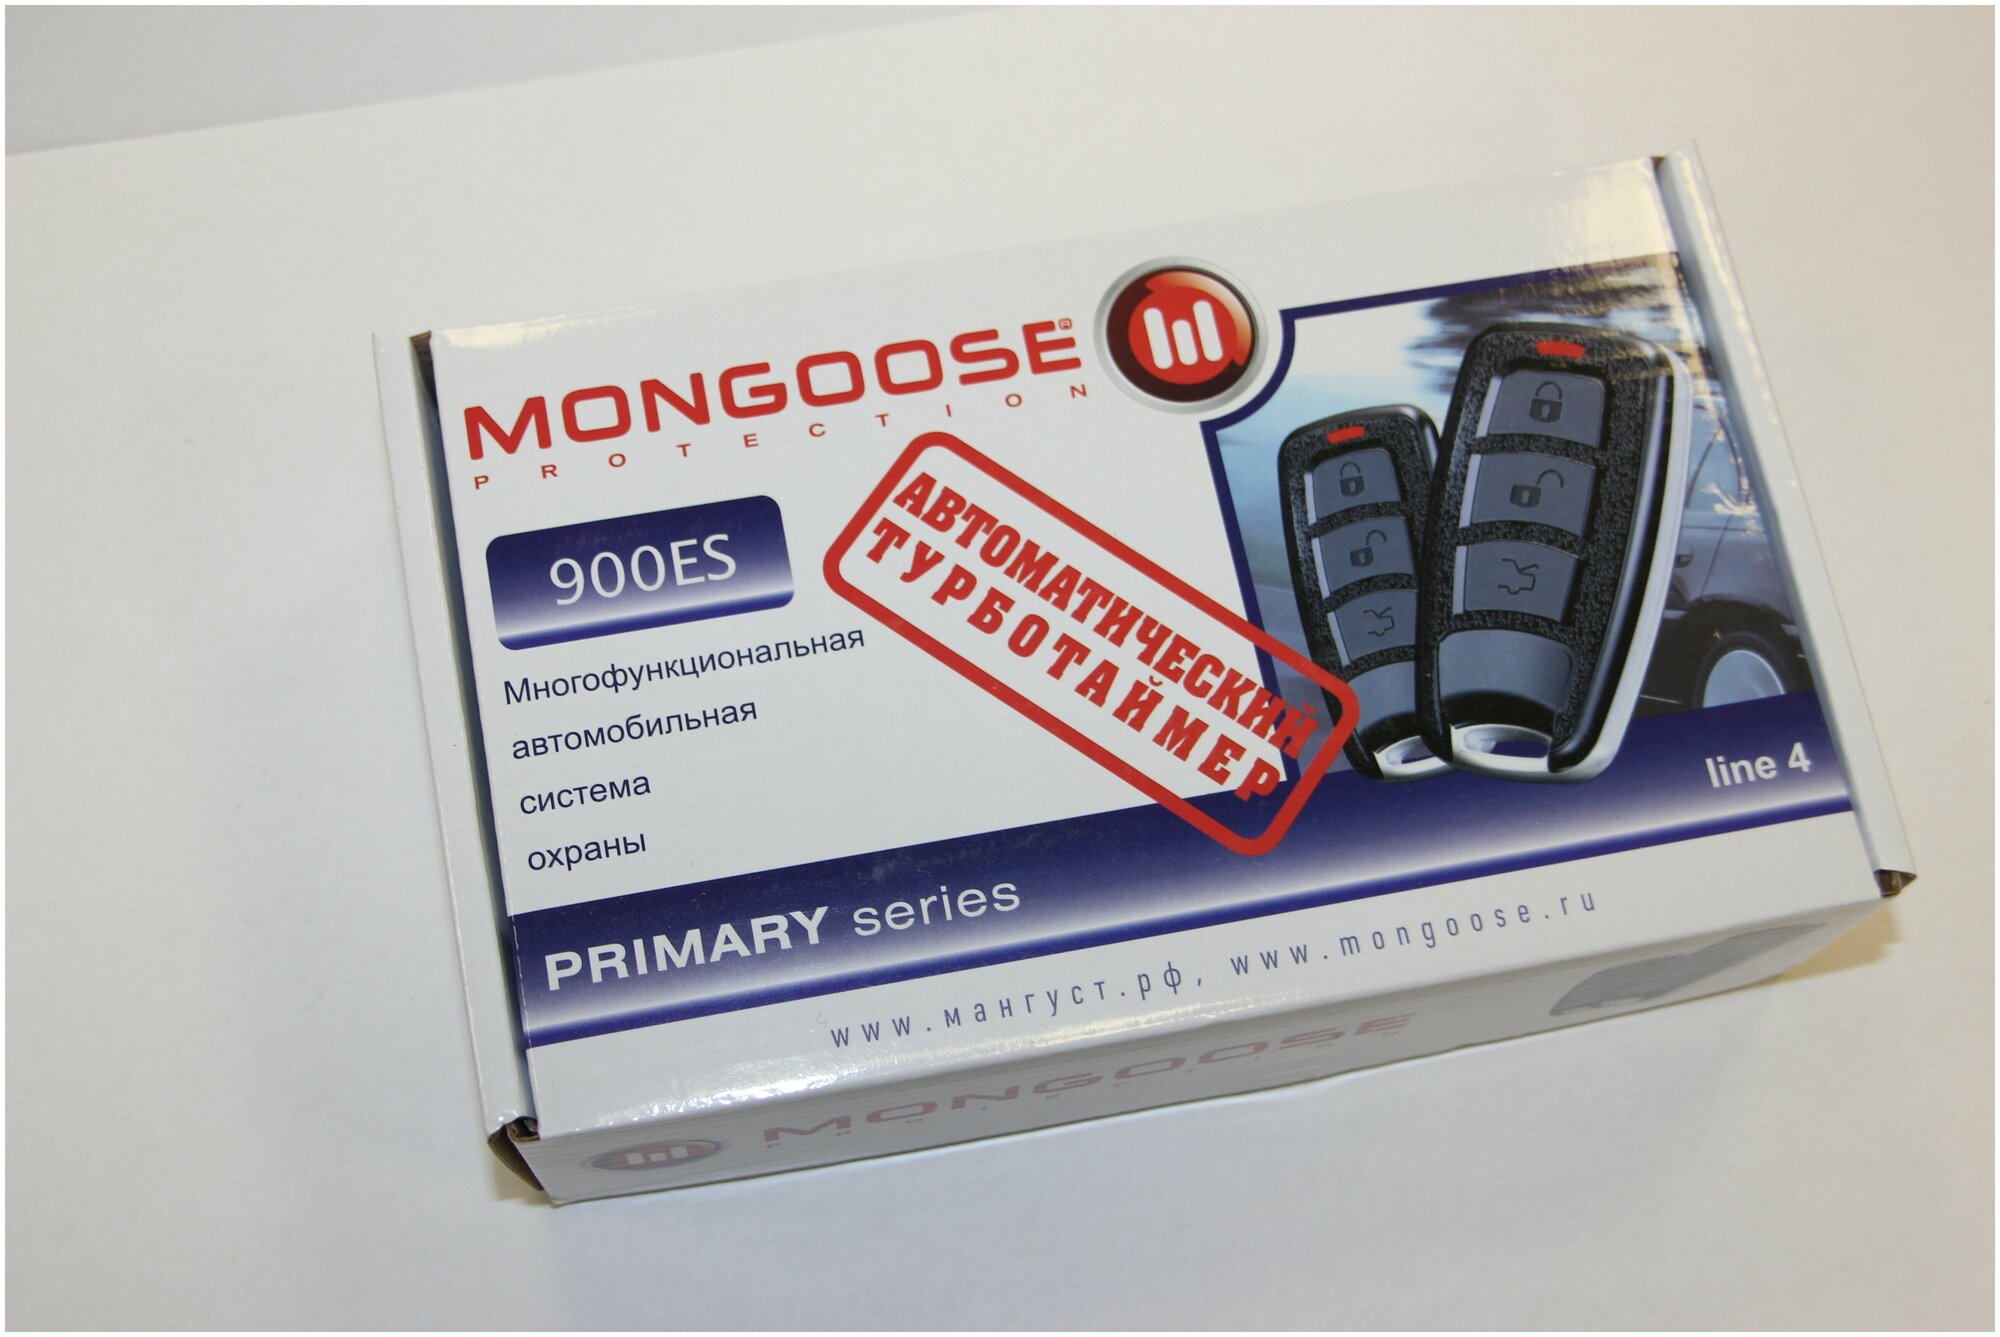 Автосигнализация Mongoose 900ES line 4